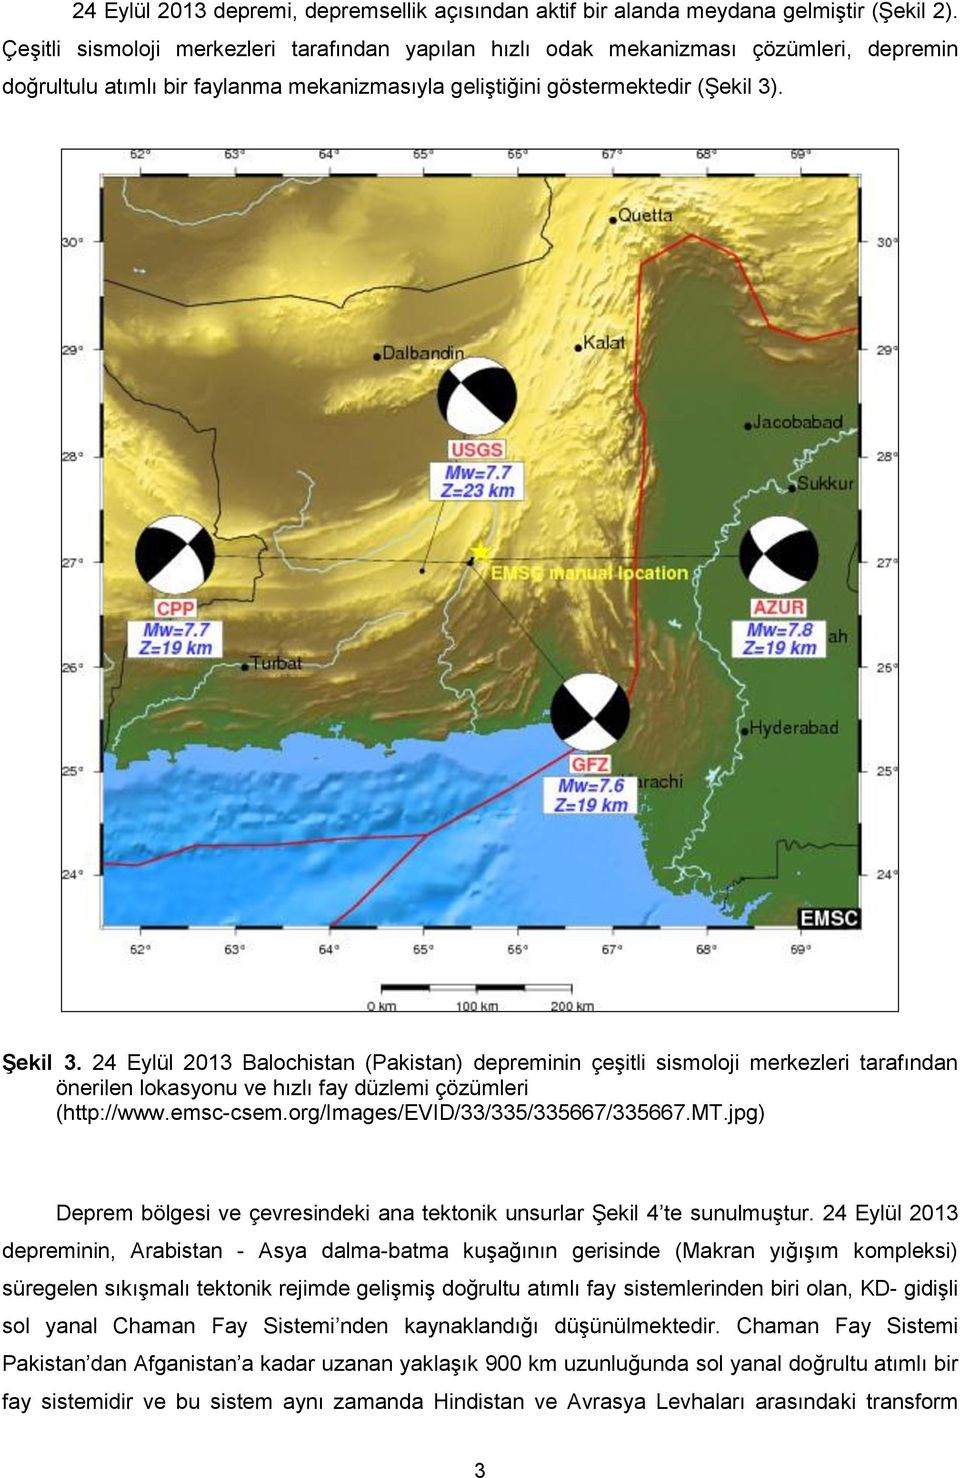 24 Eylül 2013 Balochistan (Pakistan) depreminin çeşitli sismoloji merkezleri tarafından önerilen lokasyonu ve hızlı fay düzlemi çözümleri (http://www.emsc-csem.org/images/evid/33/335/335667/335667.mt.